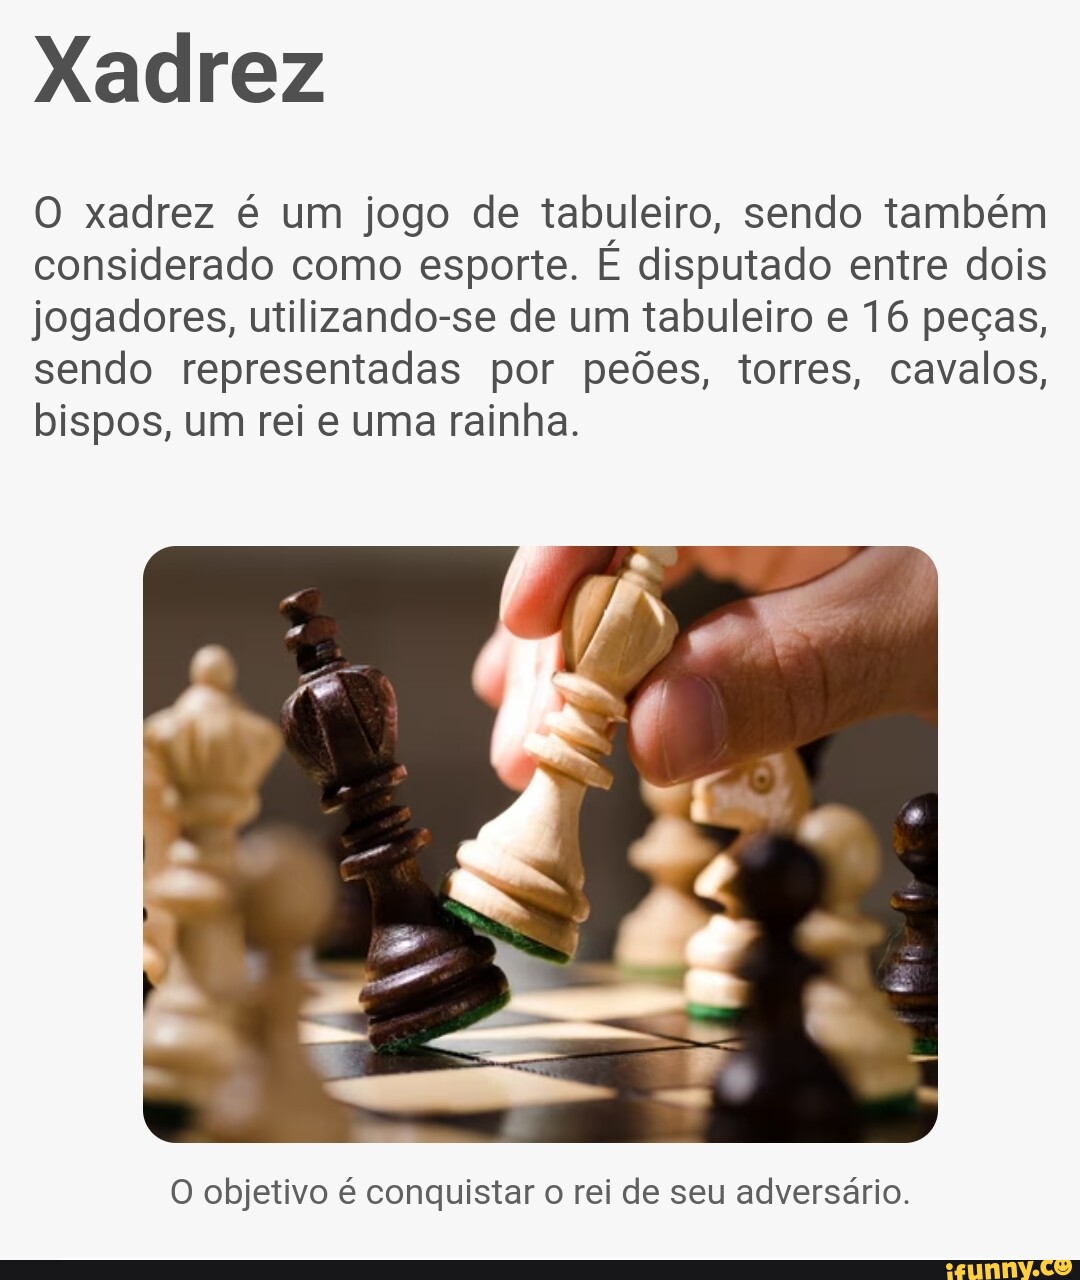 Por que xadrez é considerado um esporte? - Quora